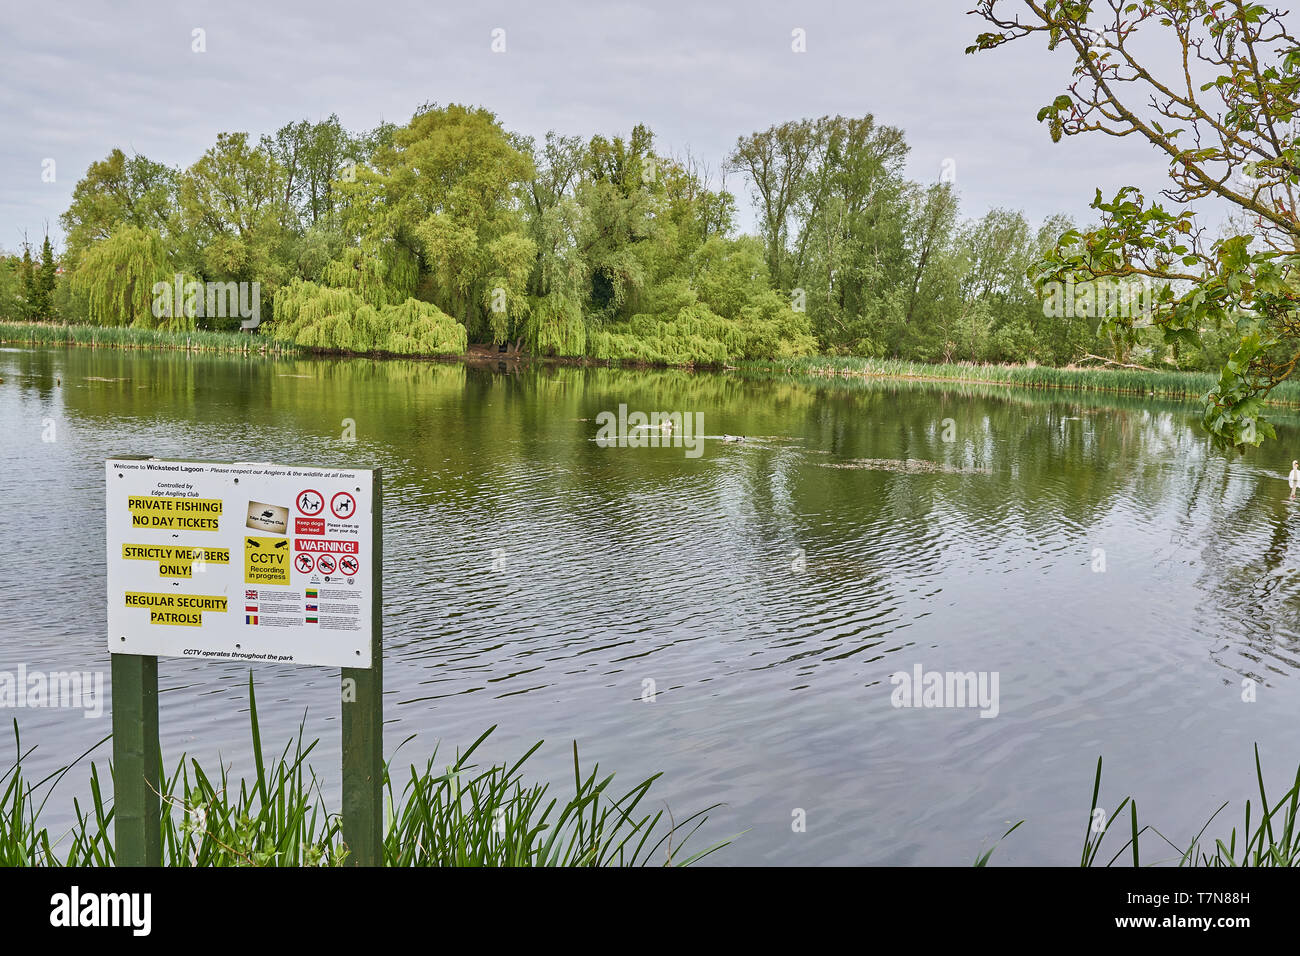 Messaggio di avvertimento che pesca nel lago privato con nessun giorno di biglietti e solo per i soci a Wickstead park, Kettering, Inghilterra. Foto Stock